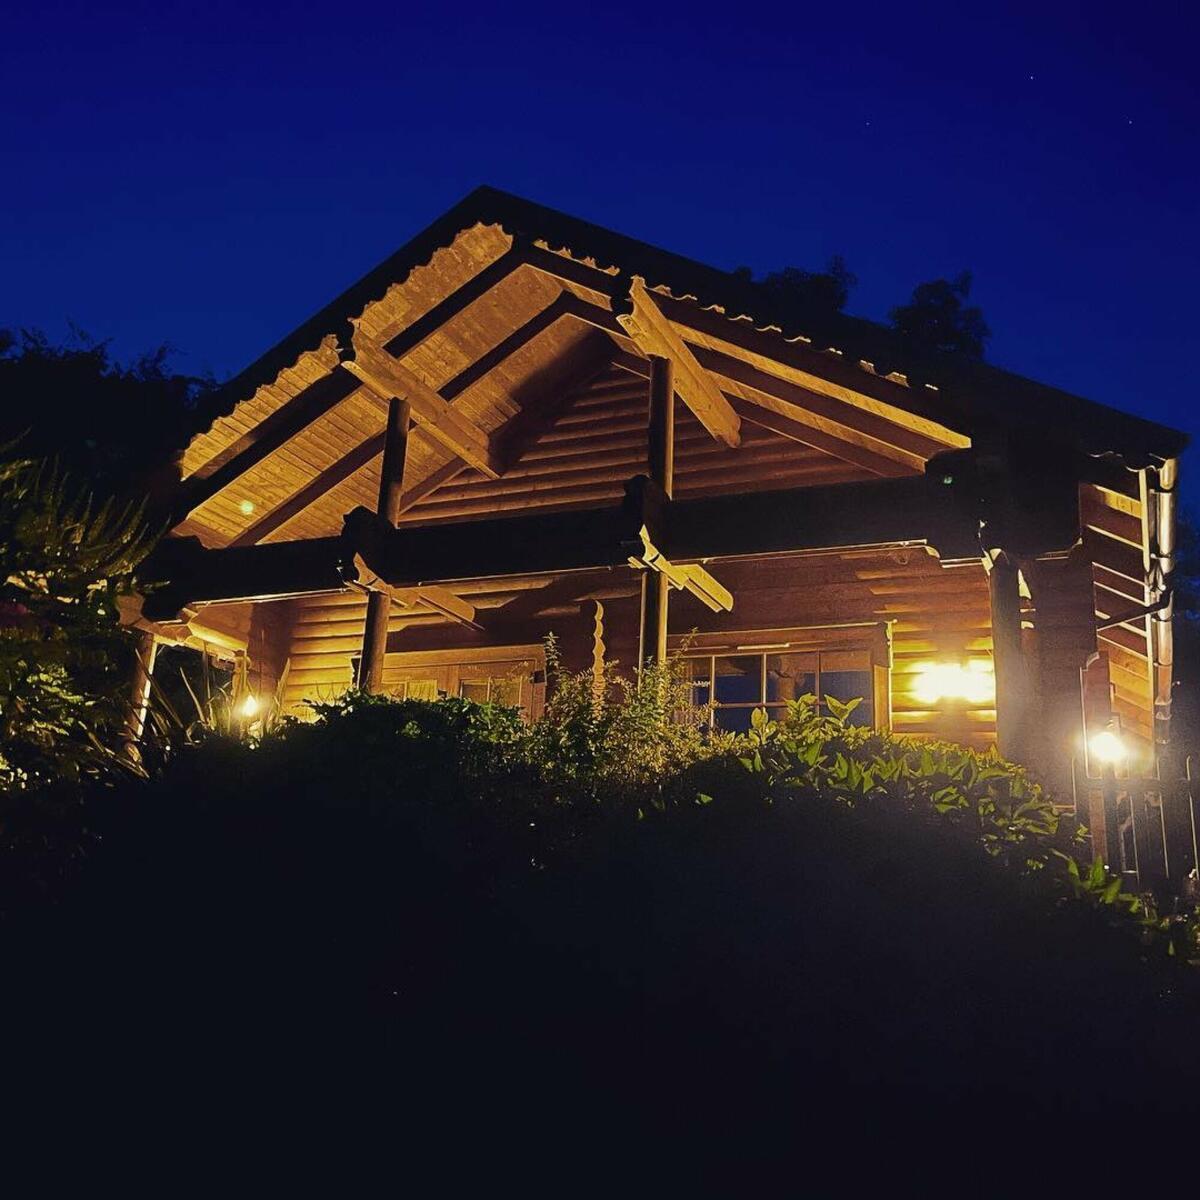 Oak cabin at night